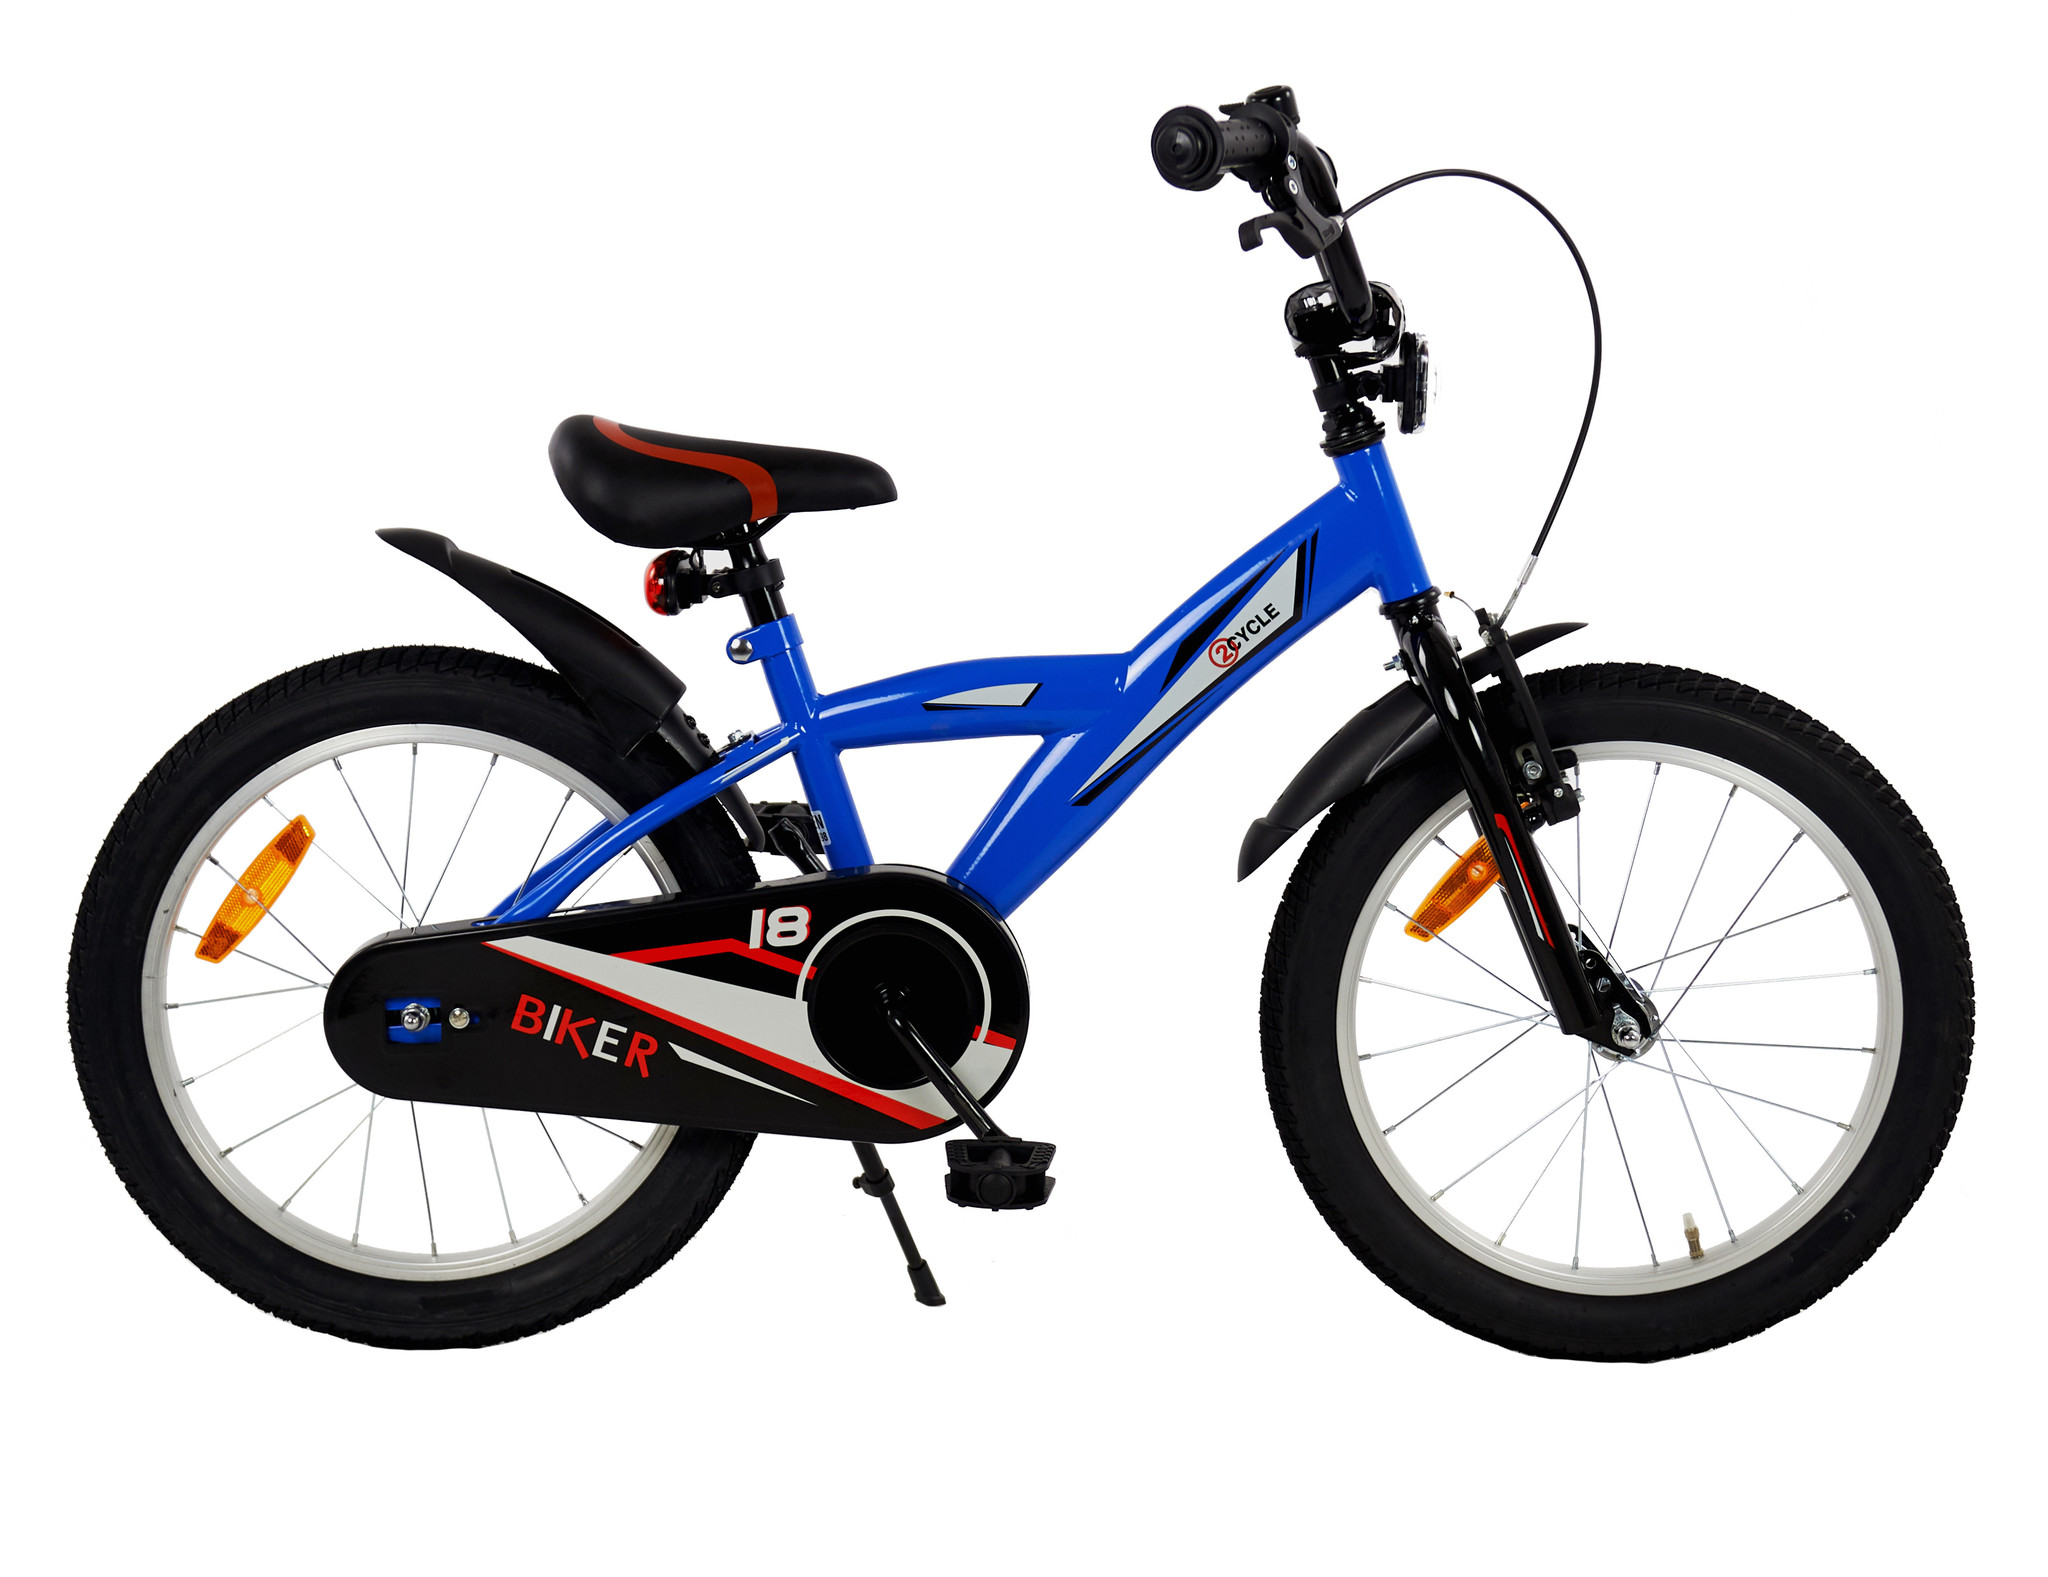 2Cycle Biker jongensfiets 18 inch direct online bestellen | Prijskiller.nl